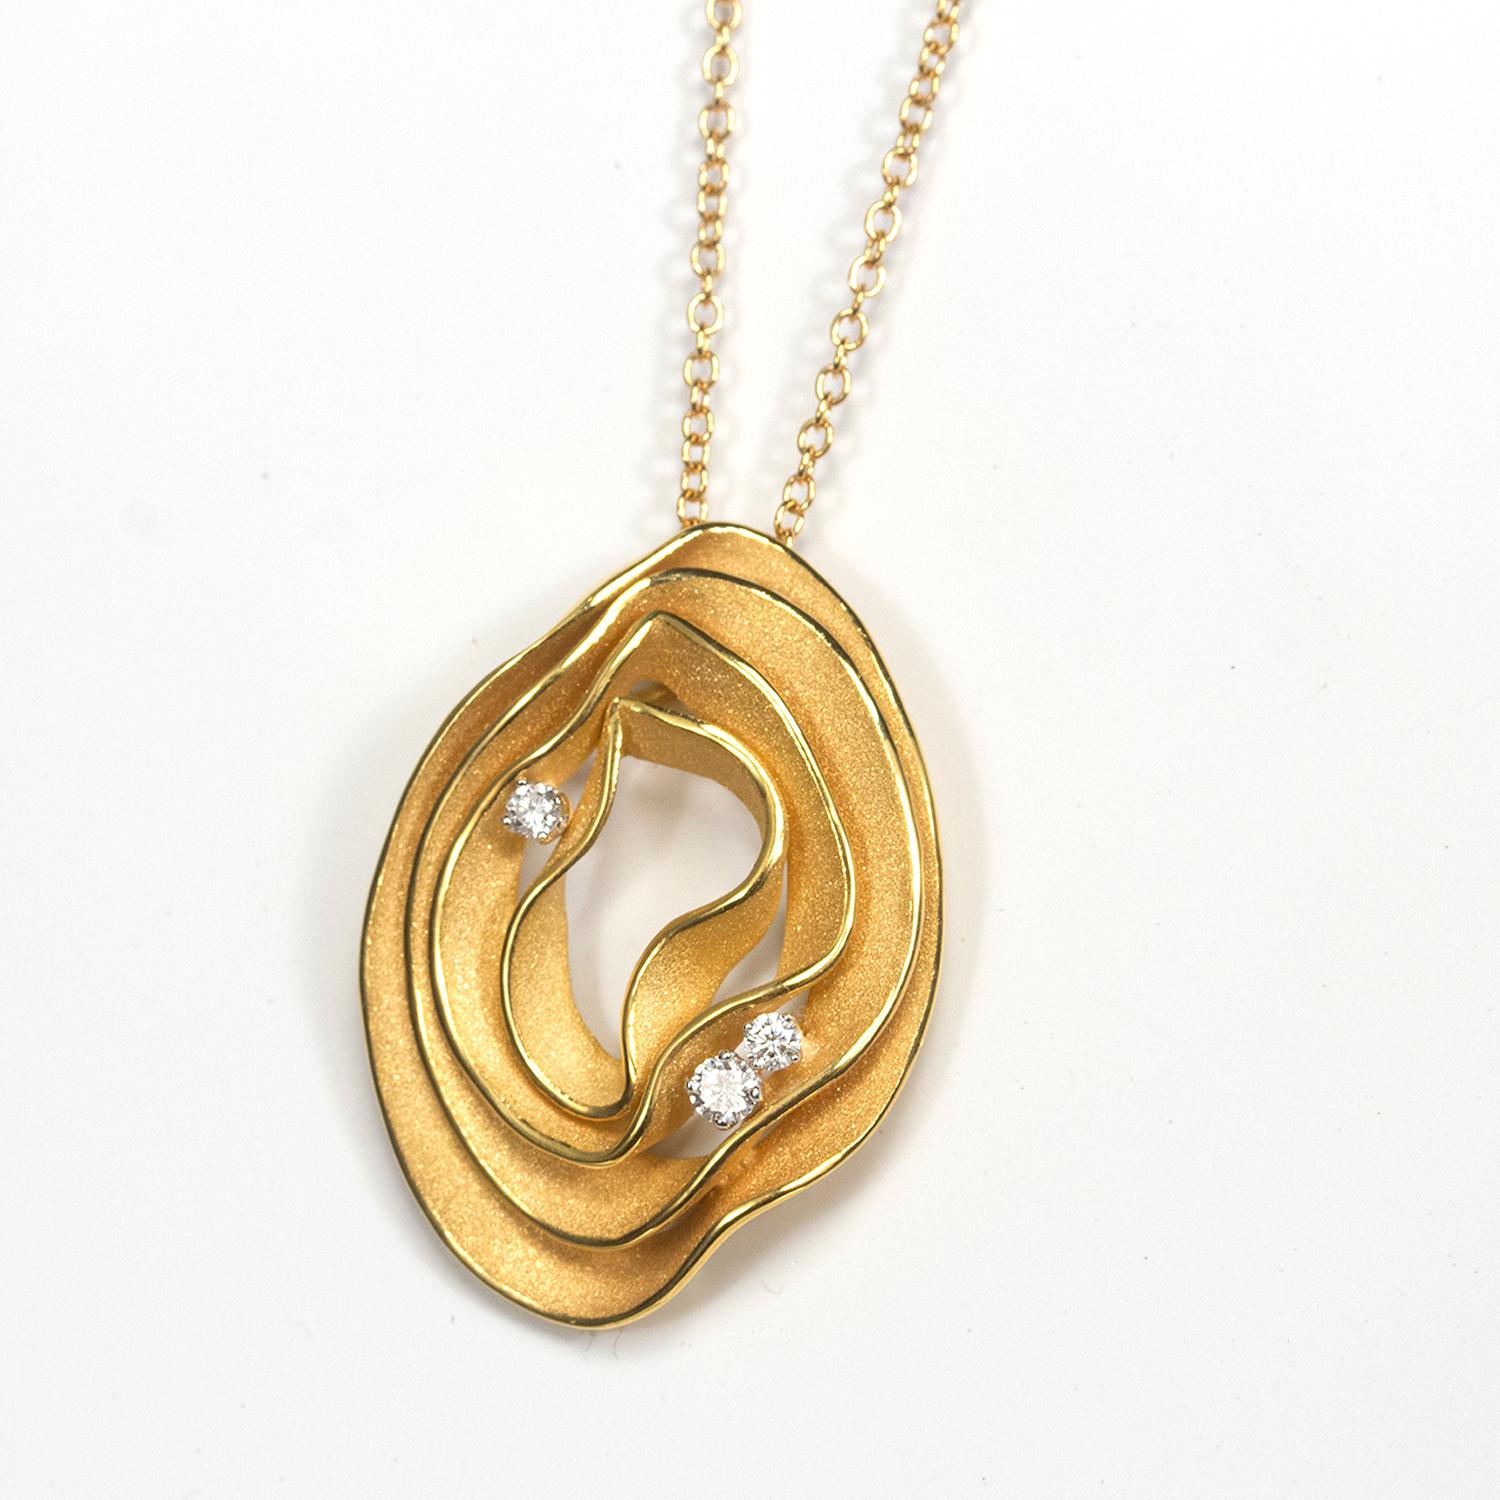 De la collection Dune Electa d'Annamaria Cammilli, collier pendentif réalisé à la main en or 18 carats orange abricot. Quatre couches d'or polies et satinées, avec trois diamants imbriqués entre les couches. Le poids total du diamant est de 0,16